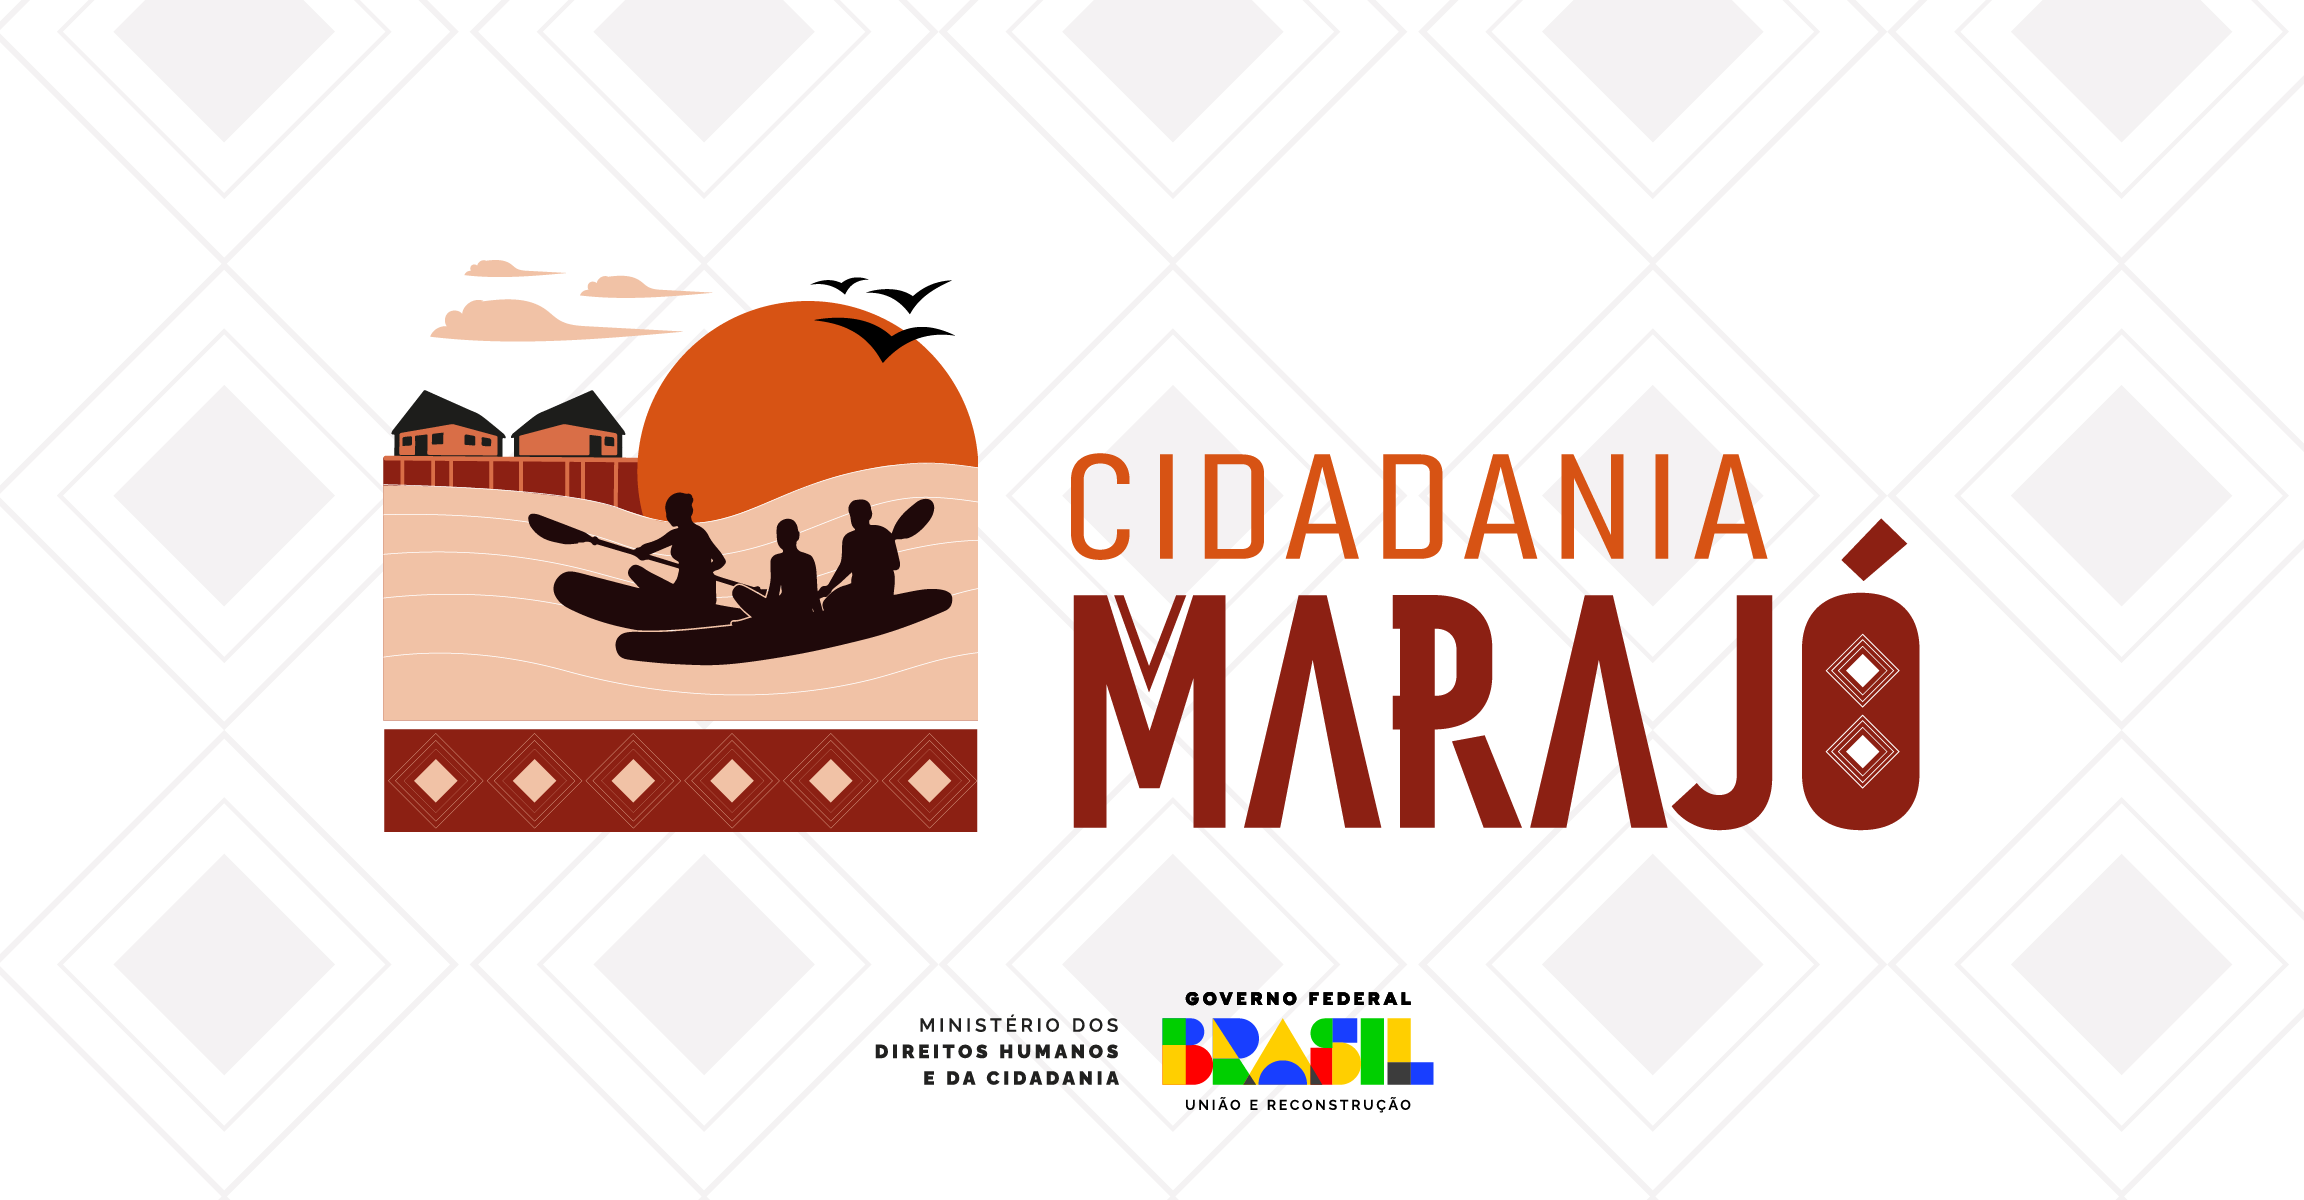 Banner retangular na horizontal com fundo branco e imagens de artes indígenas. Ao centro vemos a logomarca do Projeto Cidadania Marajó